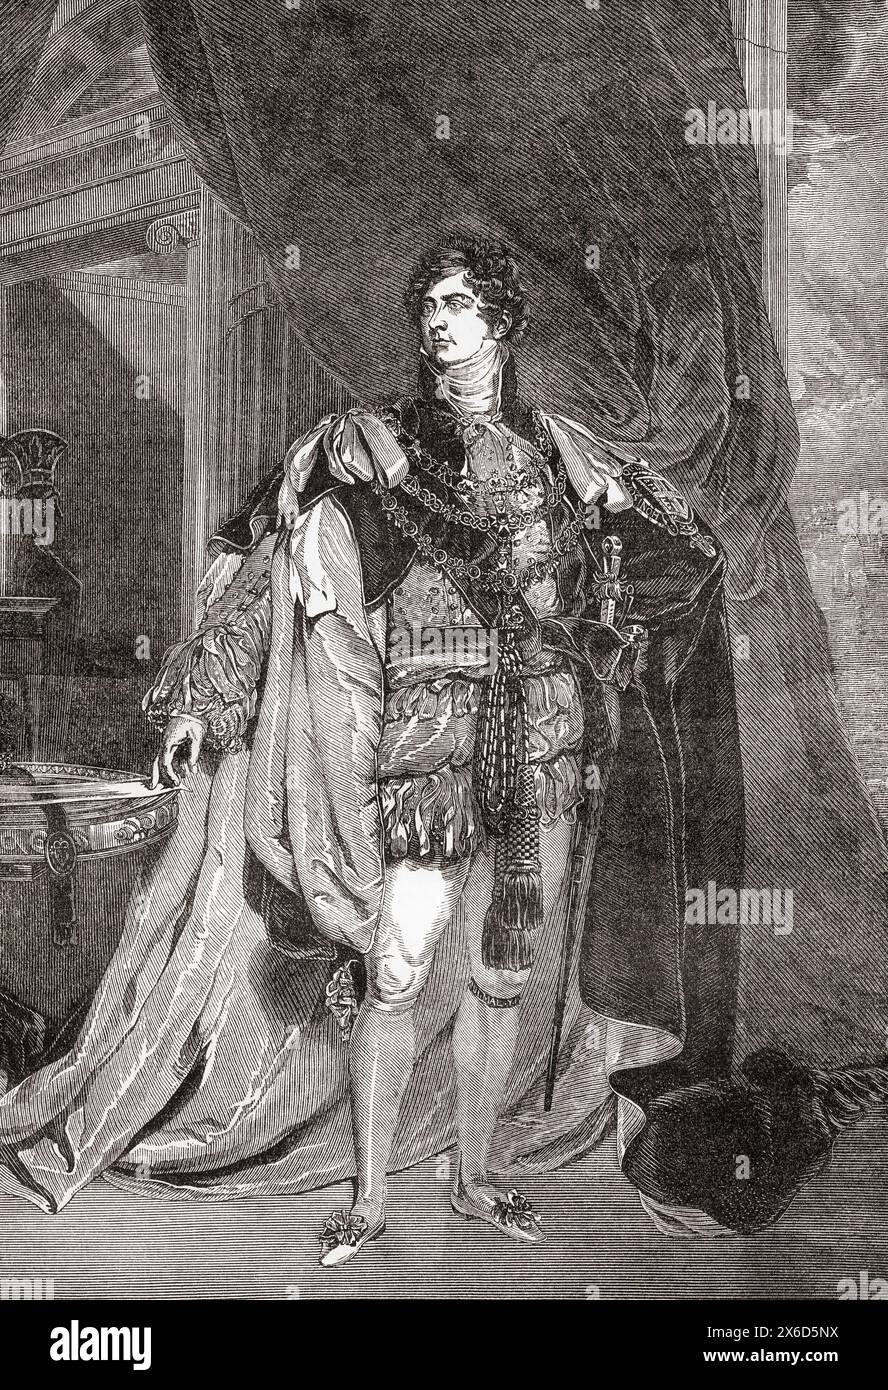 Georg IV., 1762–1830. König des Vereinigten Königreichs von Großbritannien und Irland und König von Hannover, 1820–1830. Aus Cassells illustrierter Geschichte Englands. Stockfoto